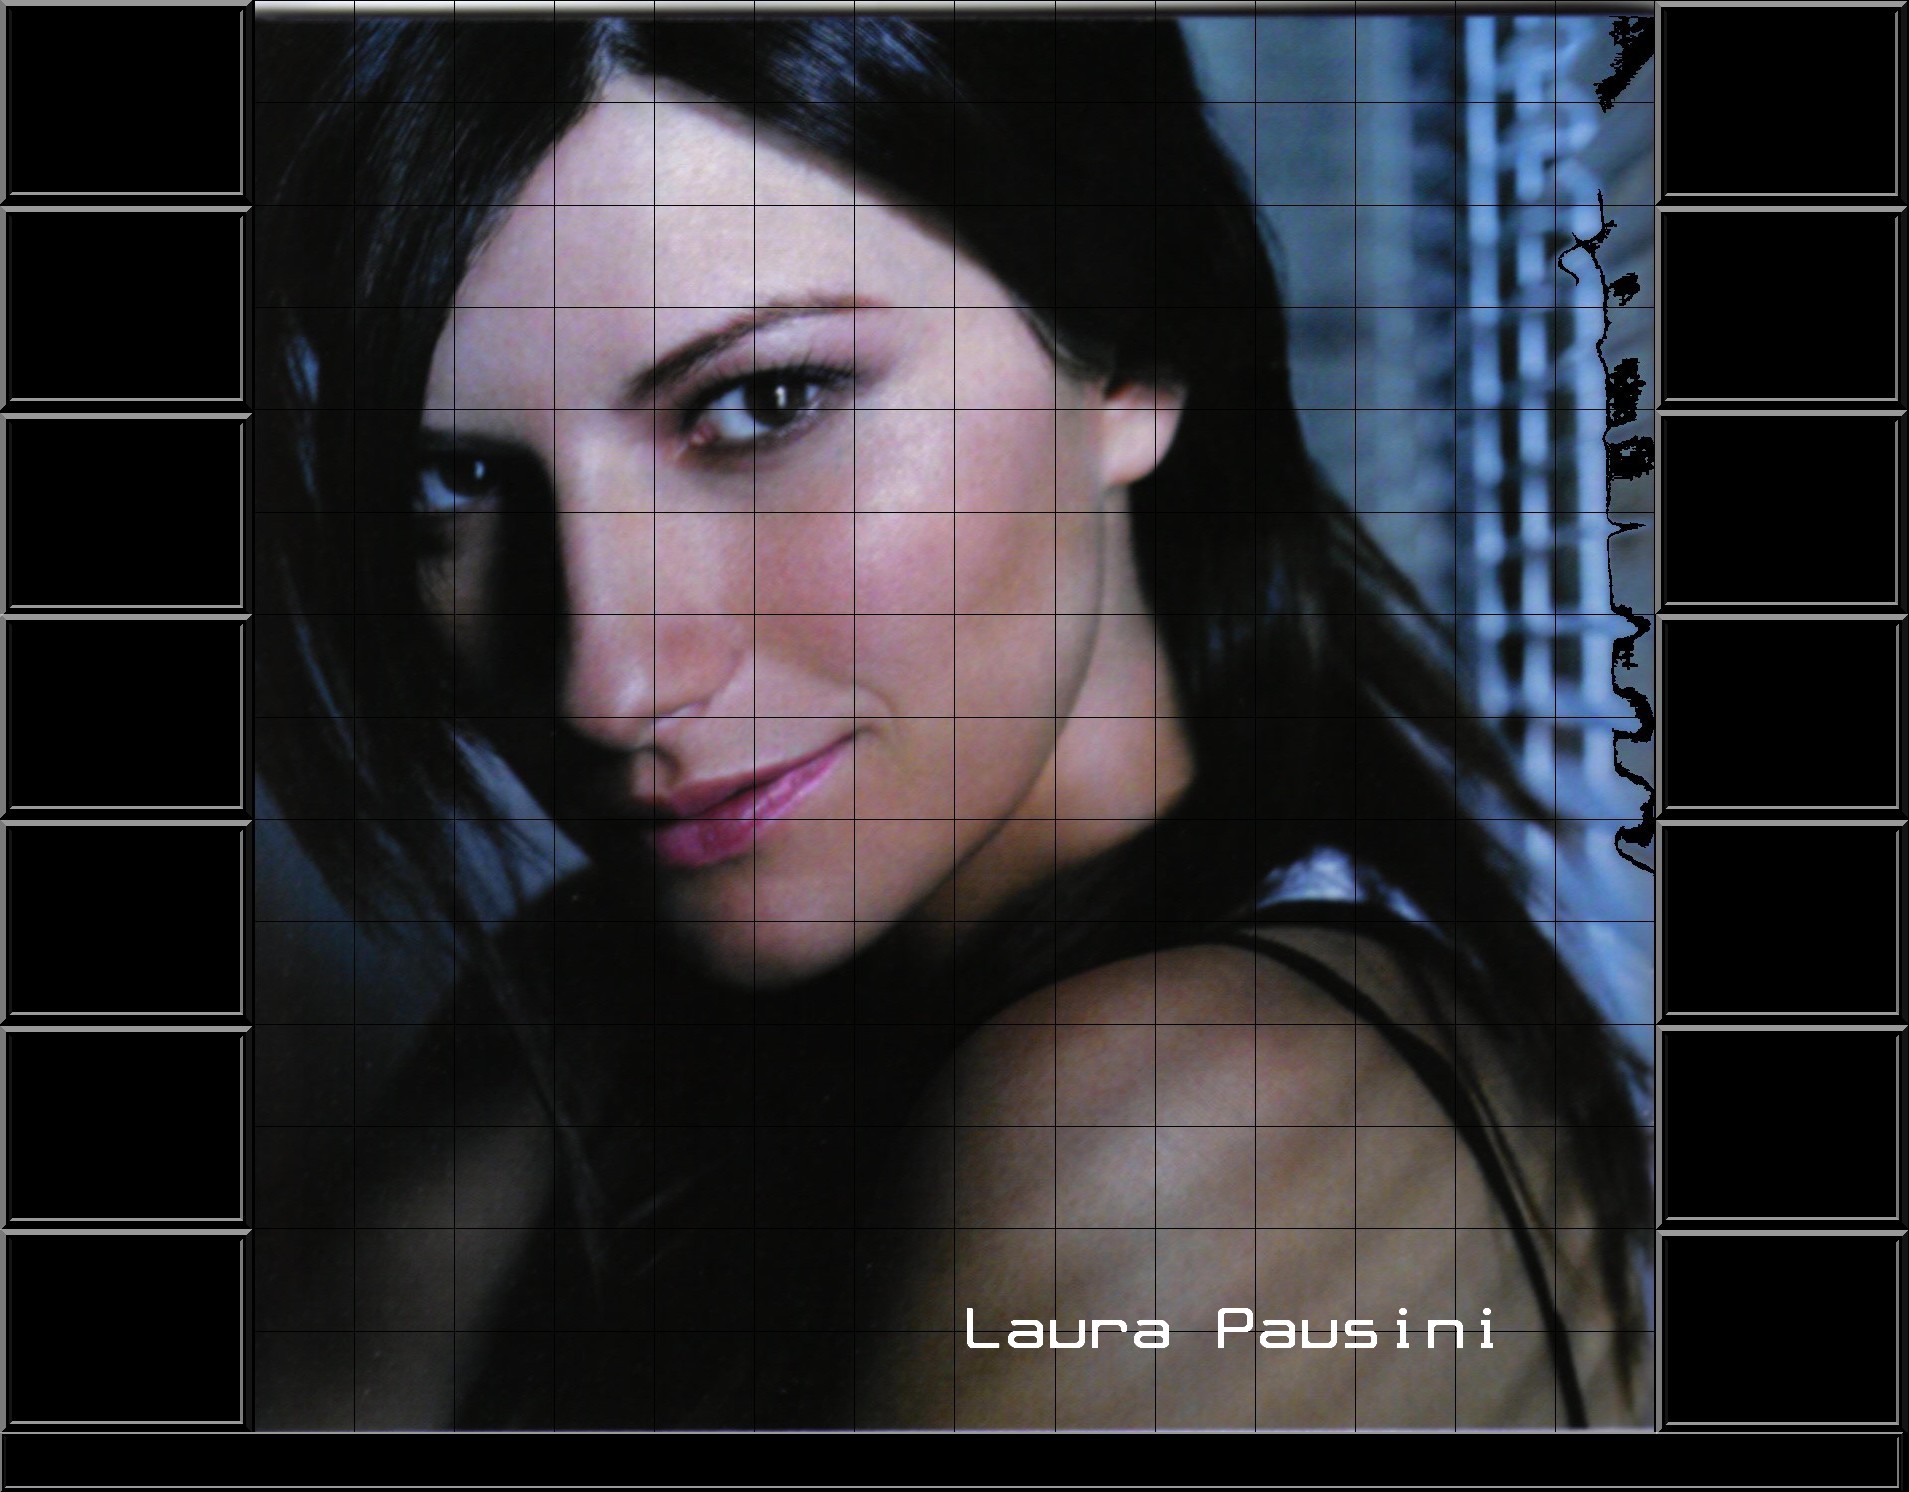 Laura pausini 2